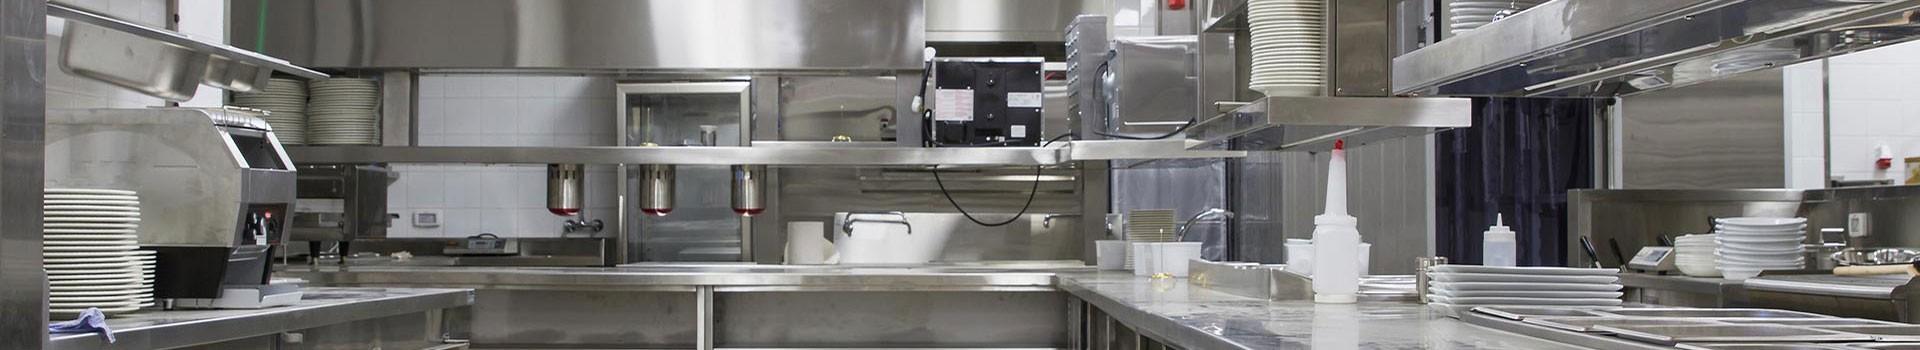 Comptoir arrière pour machine café 2000 mm avec élément pour lave-vaisselle et producteur glaçon